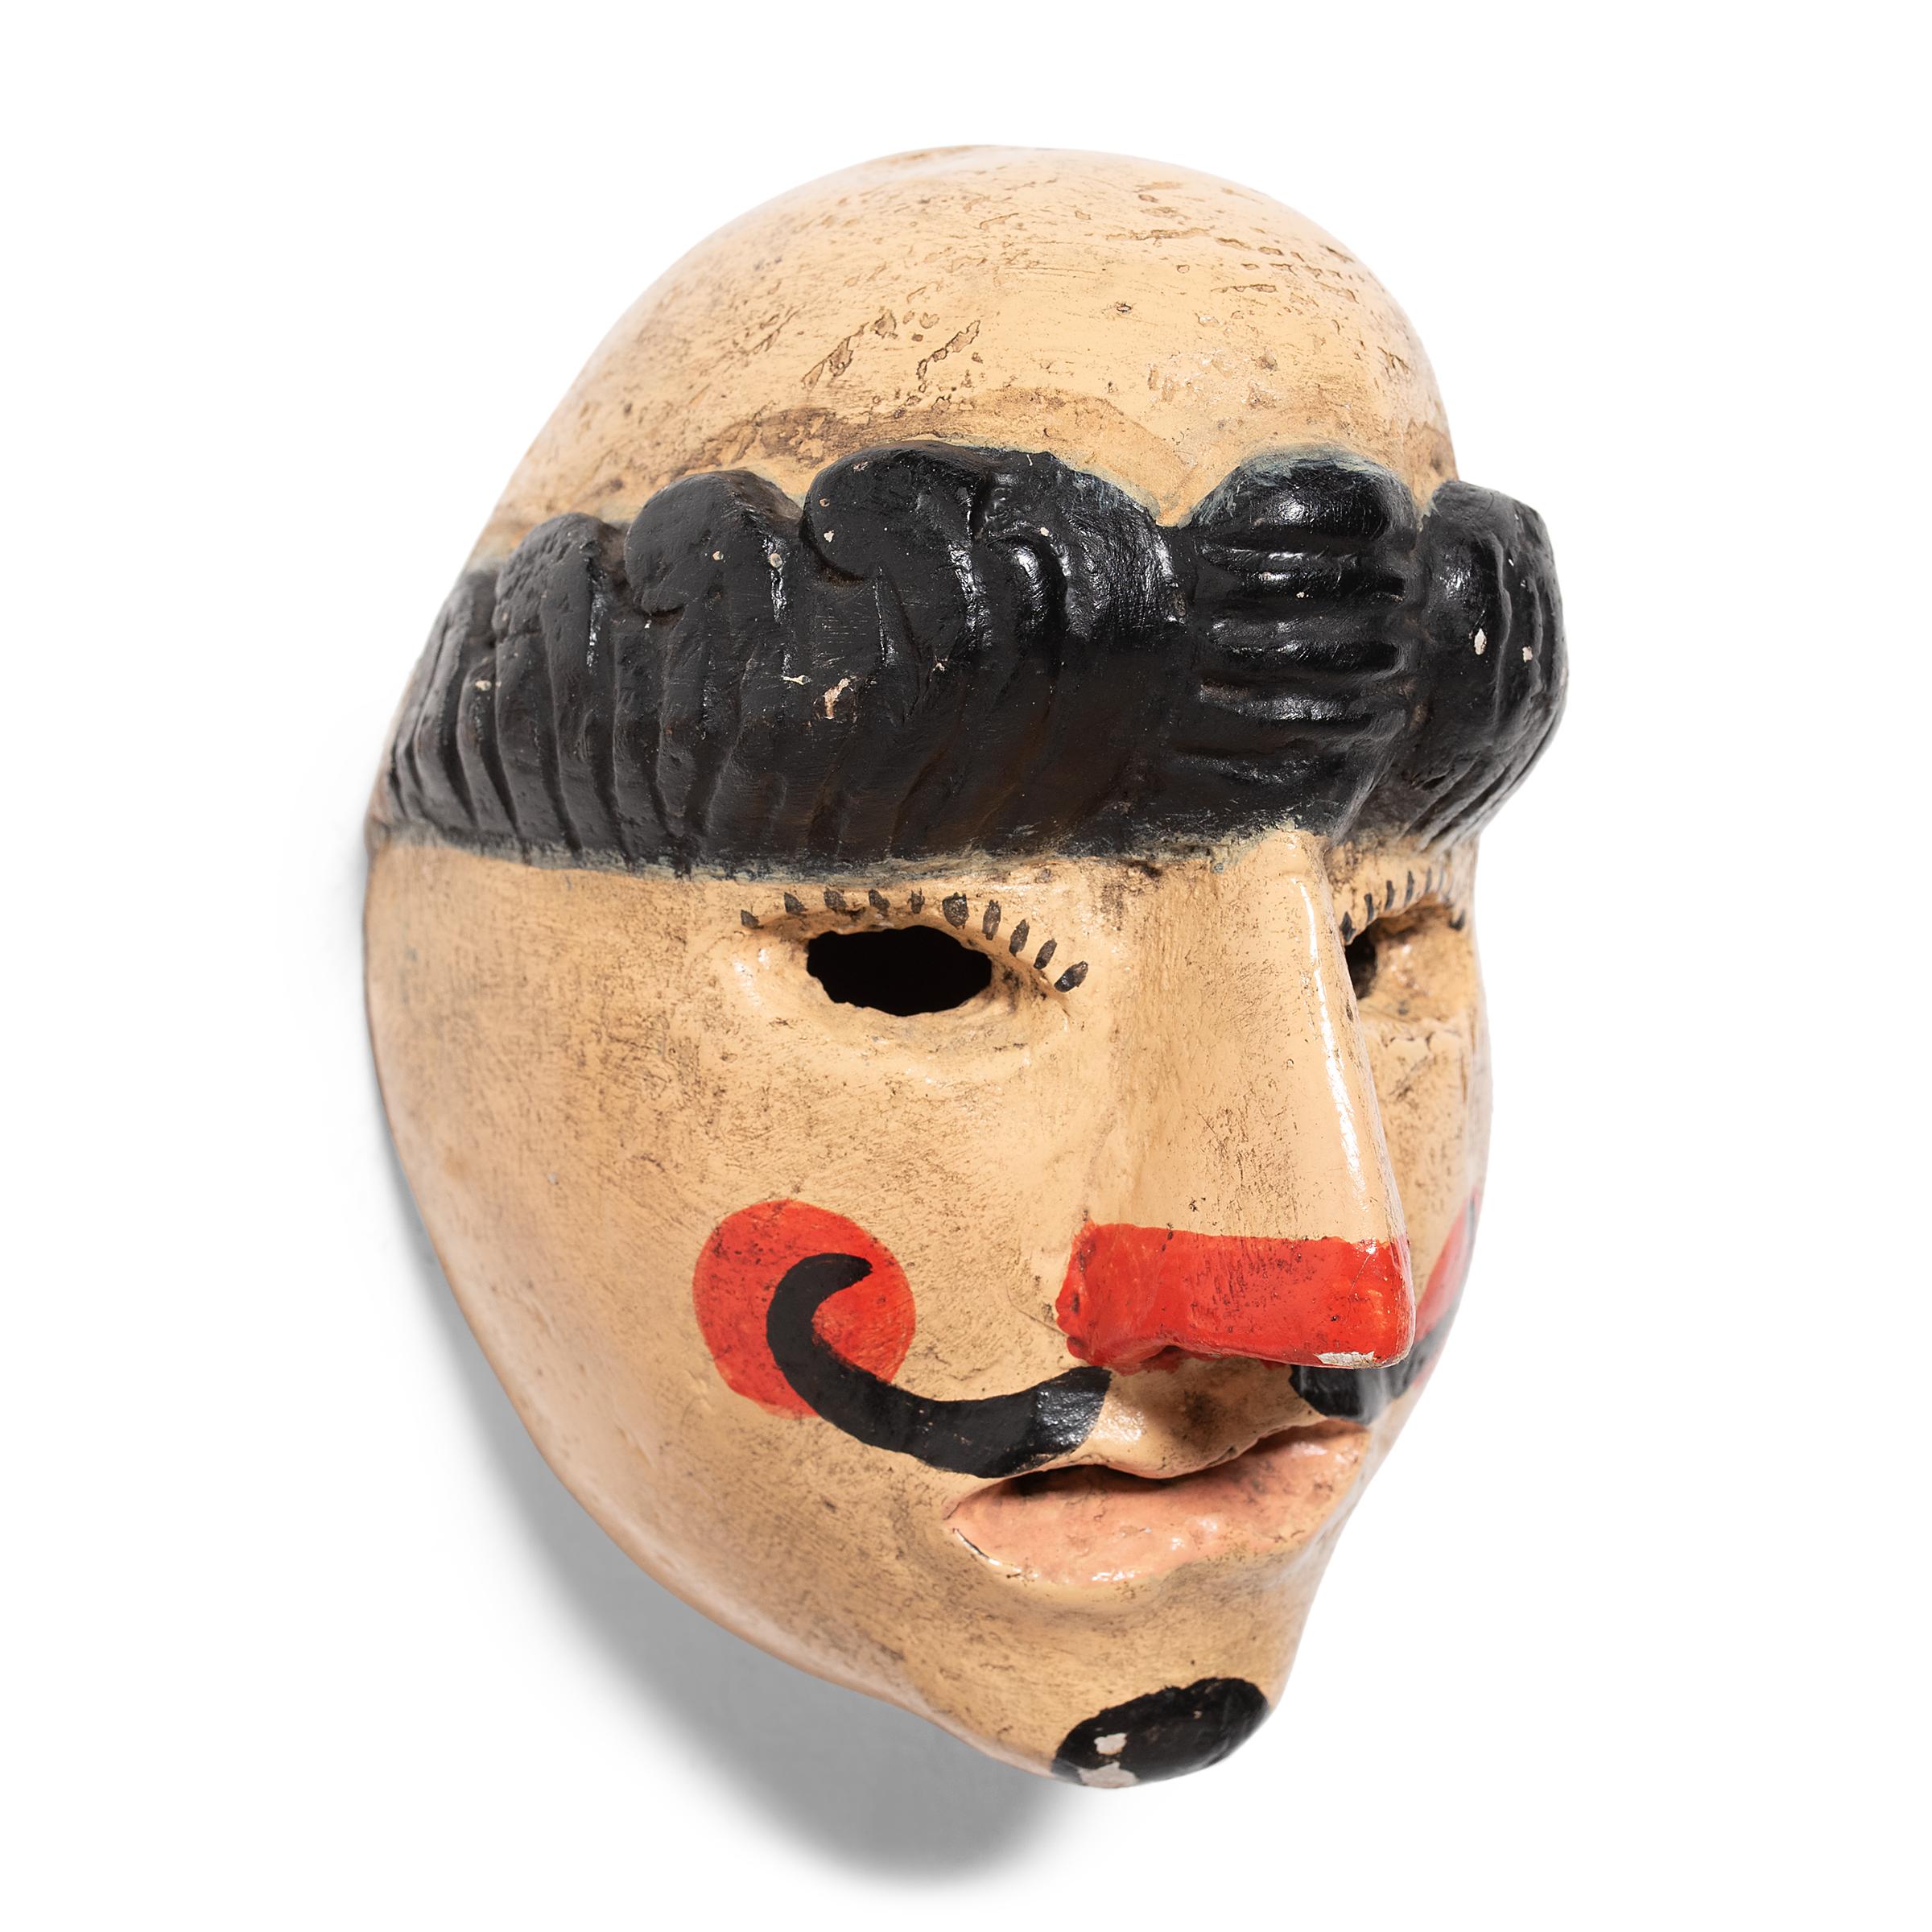 Diese bunt bemalte und kunstvoll geschnitzte Maske wurde einst bei einer der ältesten Tanzaufführungen Guatemalas, dem Baile del Patzcar, verwendet. Dieser Tanz, der auch heute noch praktiziert wird, entwickelte sich aus einem Reinigungsritual der